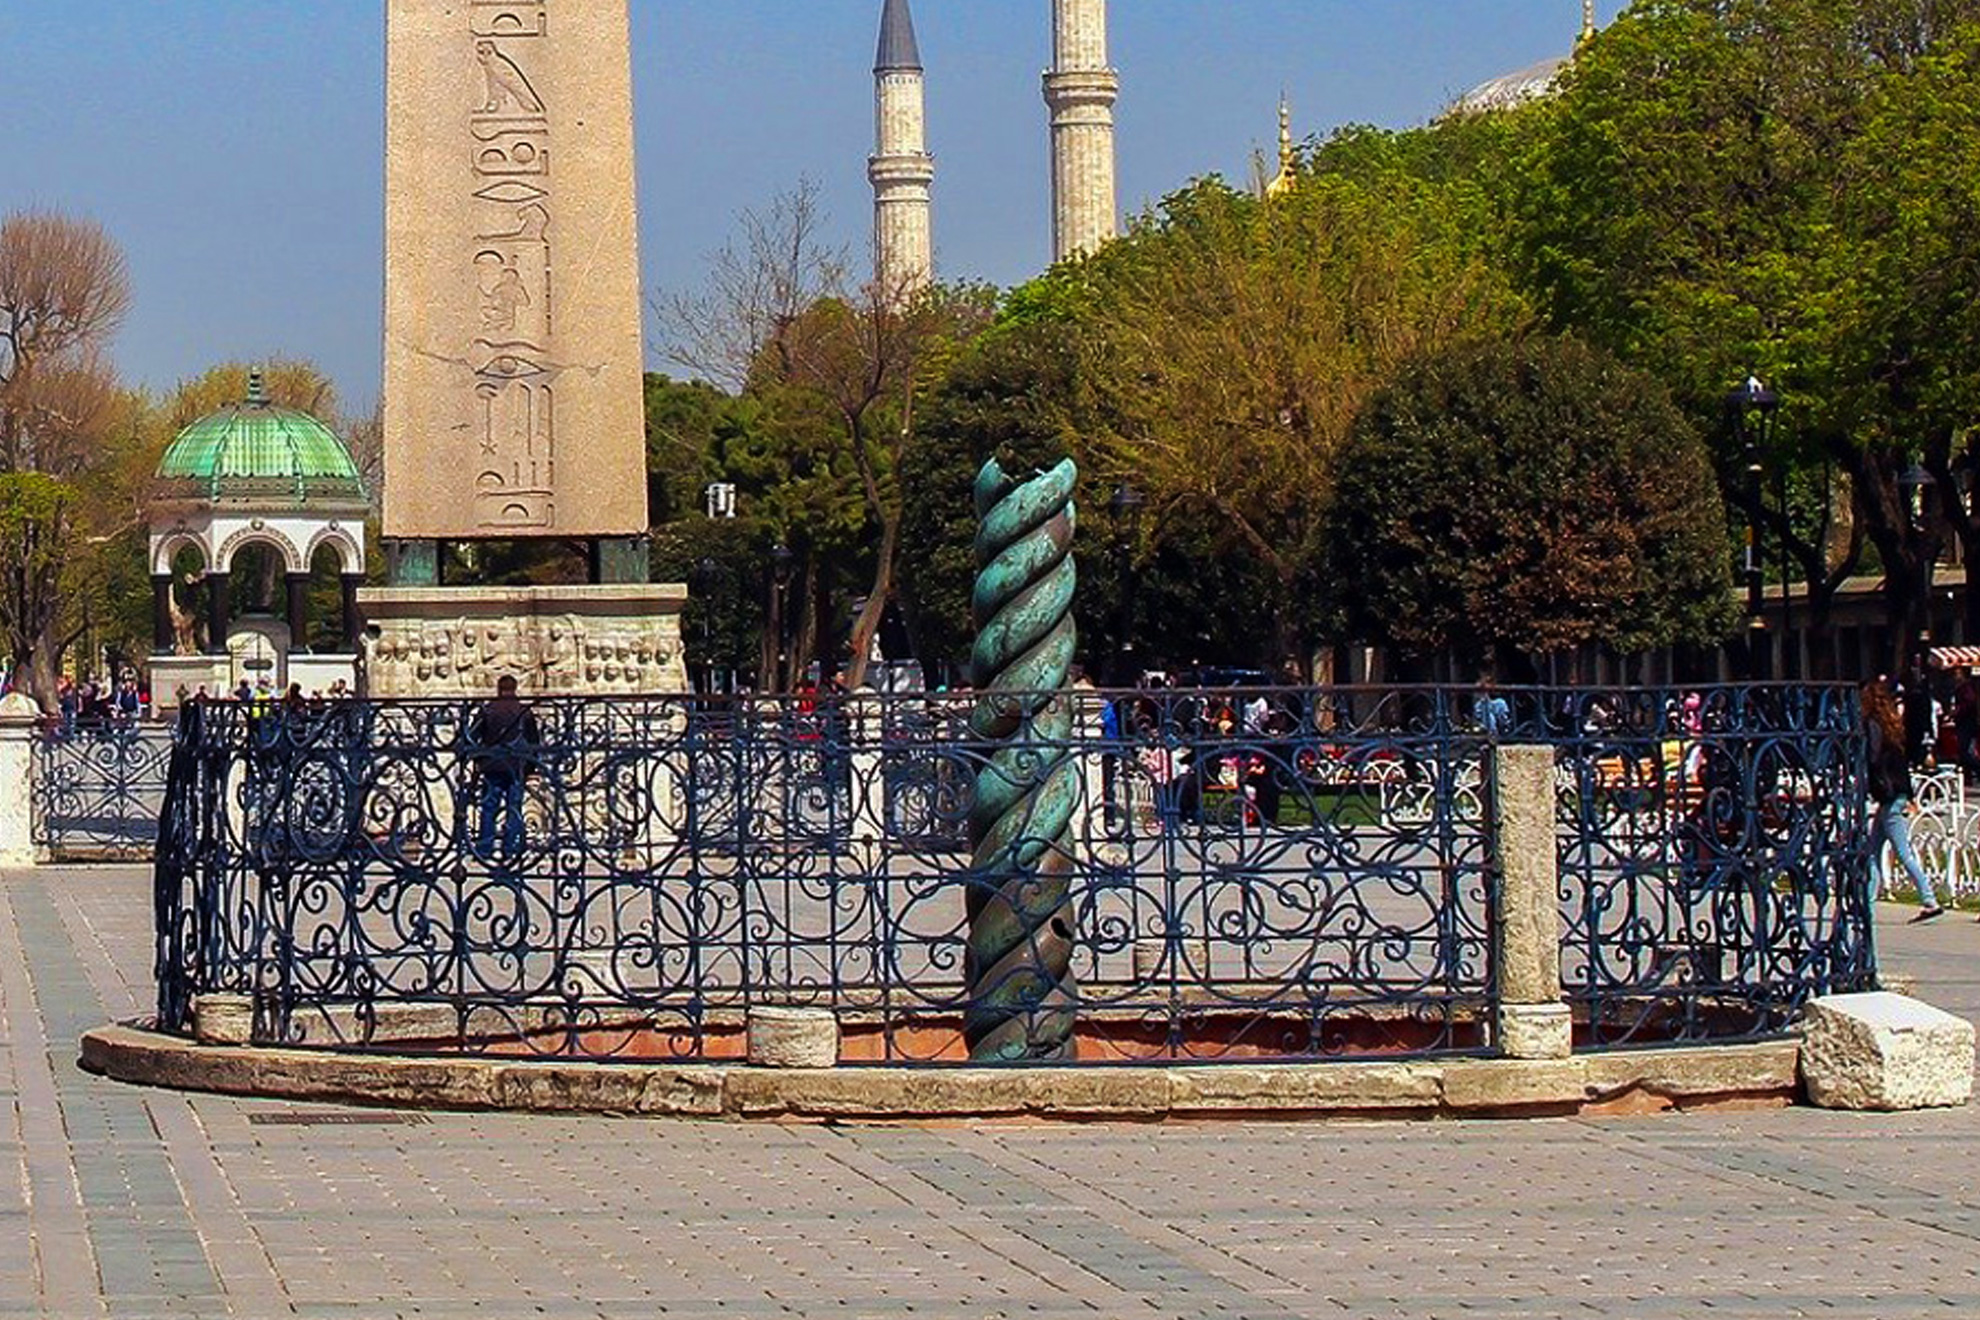  Истанбул - величието на една империя - Змиевидната колона, Истанбул, Турция - "Snake column" or "Serpents column", Istanbul, Turkey